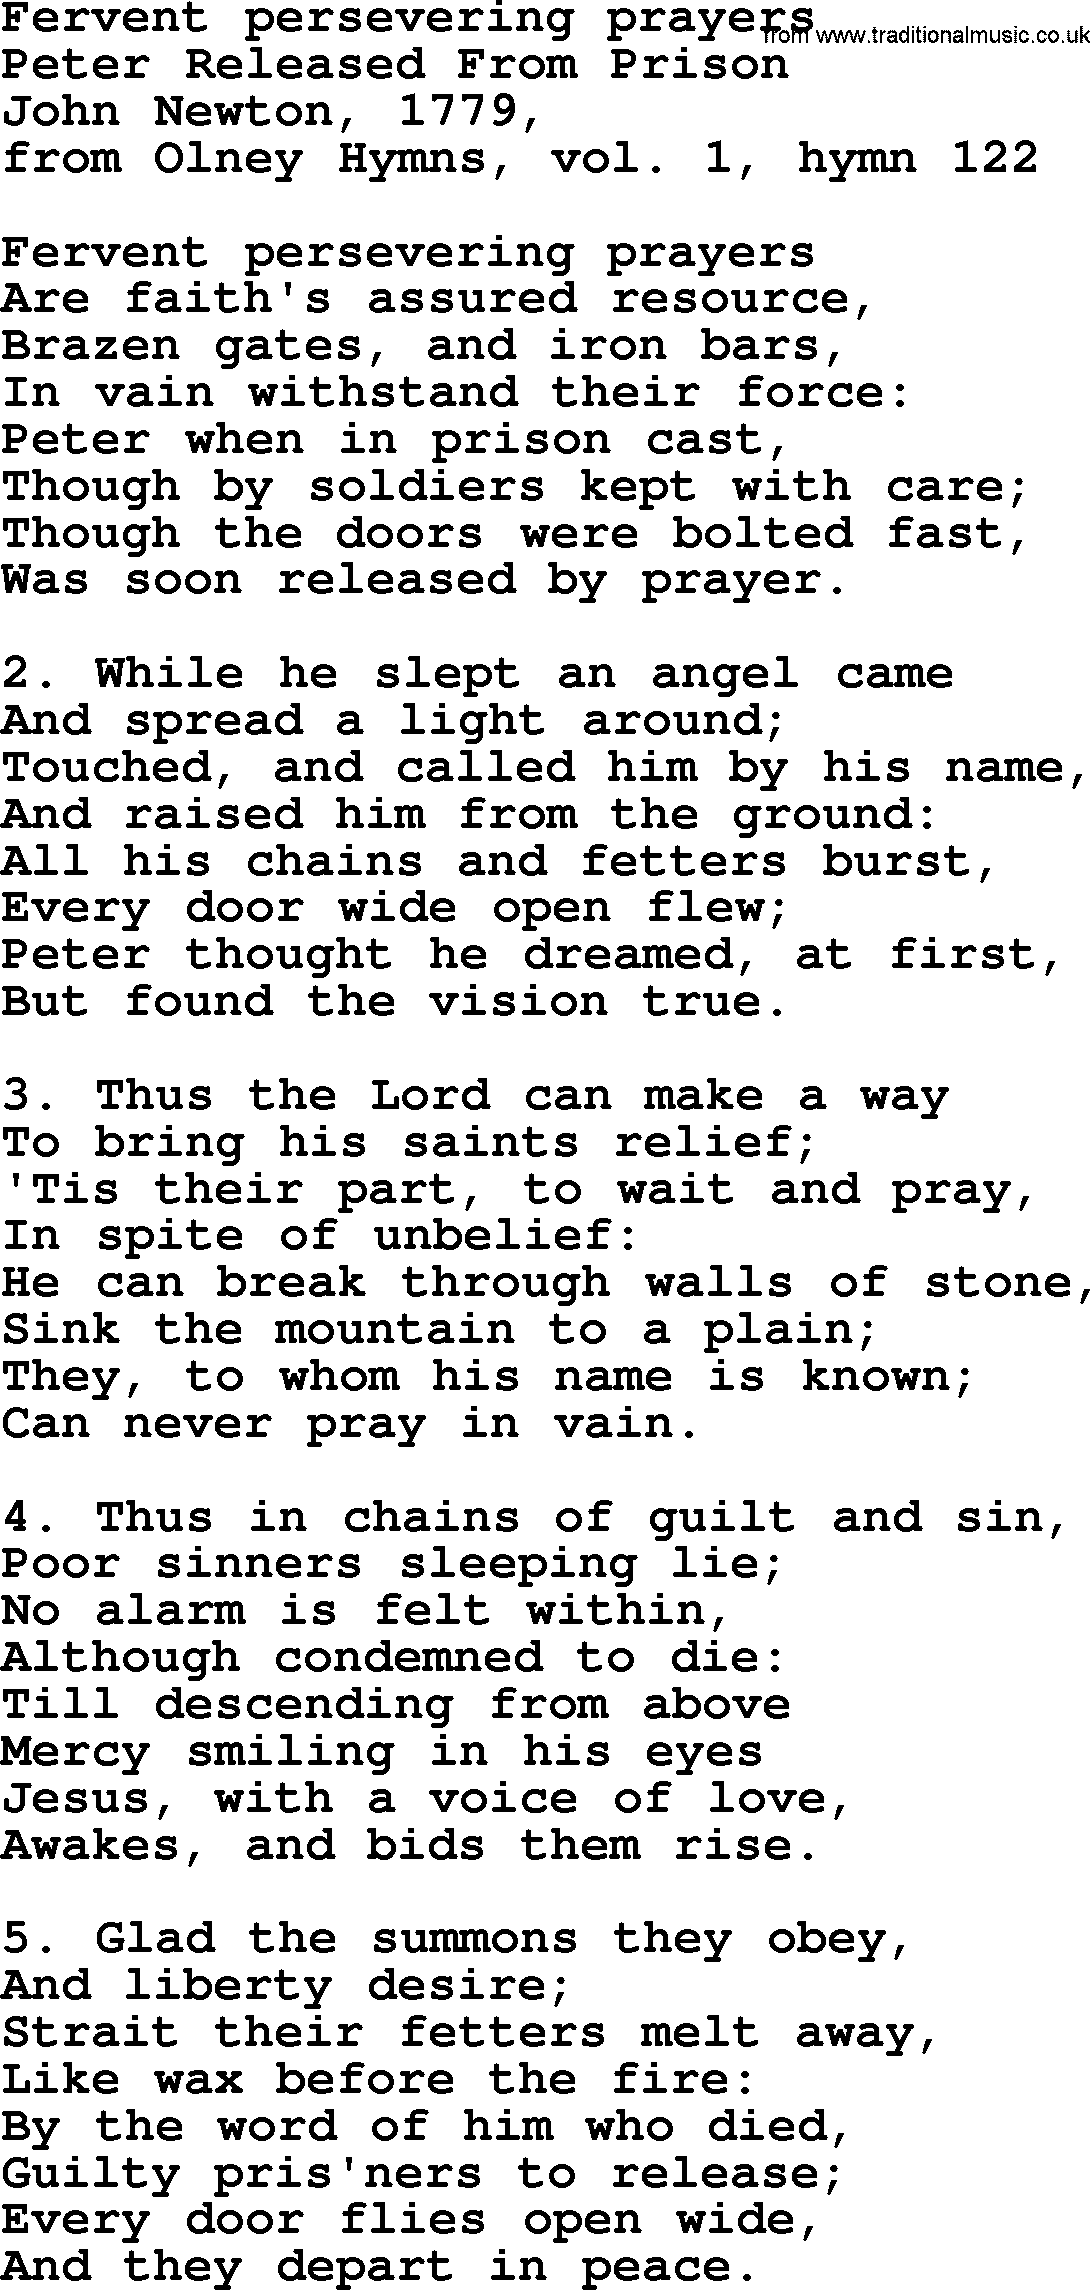 John Newton hymn: Fervent Persevering Prayers, lyrics